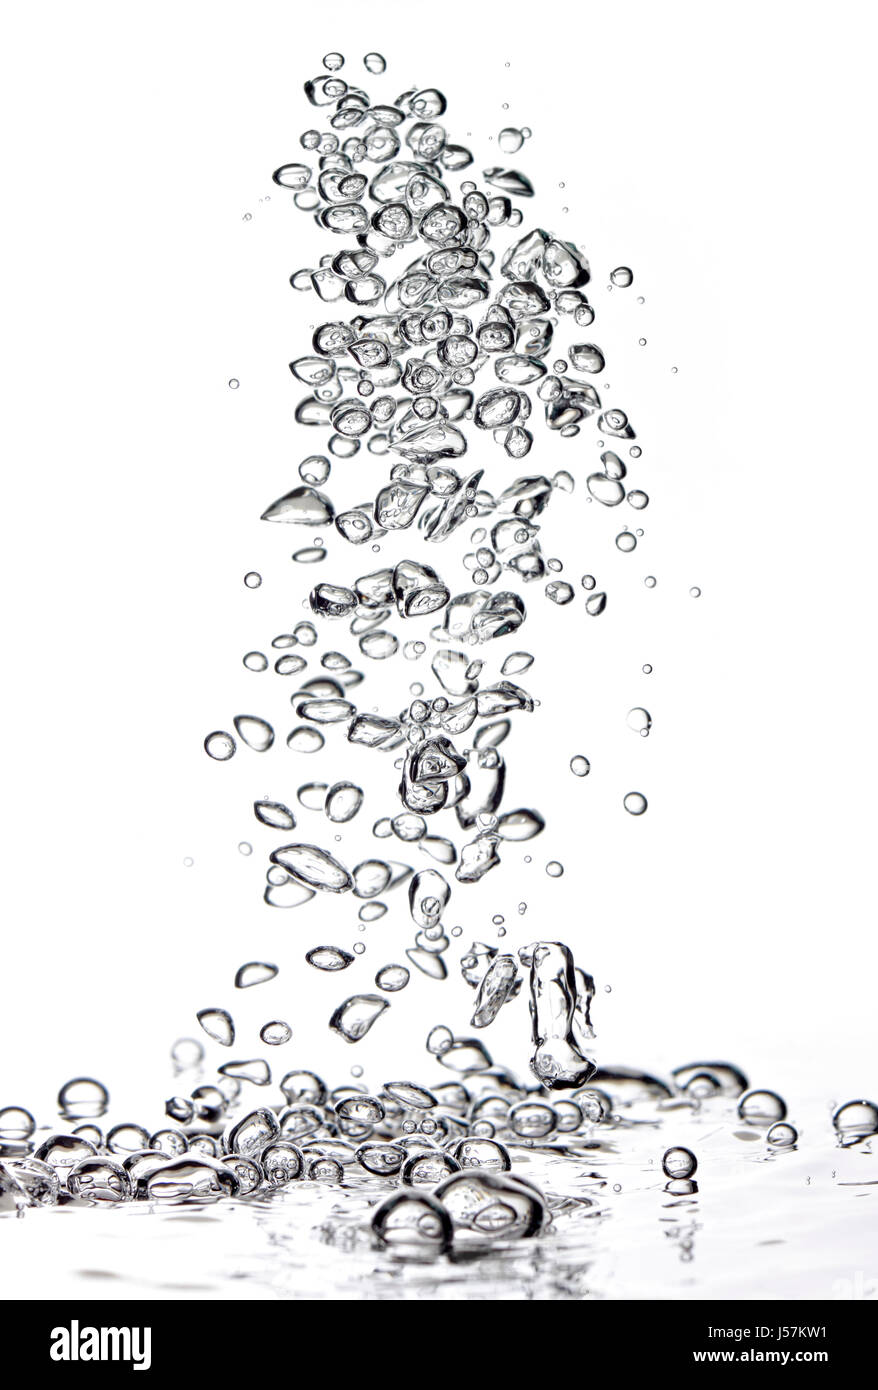 Résumé des bulles d'air dans l'eau fraîche sur fond blanc Banque D'Images